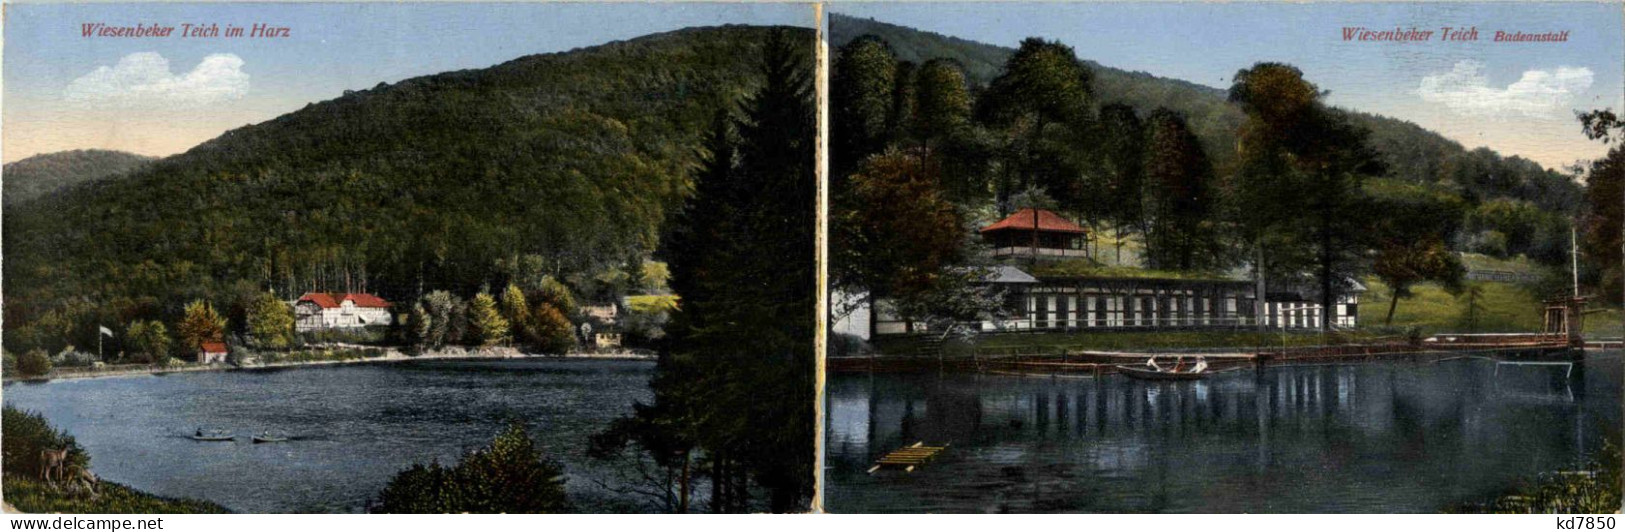 Wiesenbeker Teich Im Harz - Badeanstalt - Klappkart - Bad Lauterberg